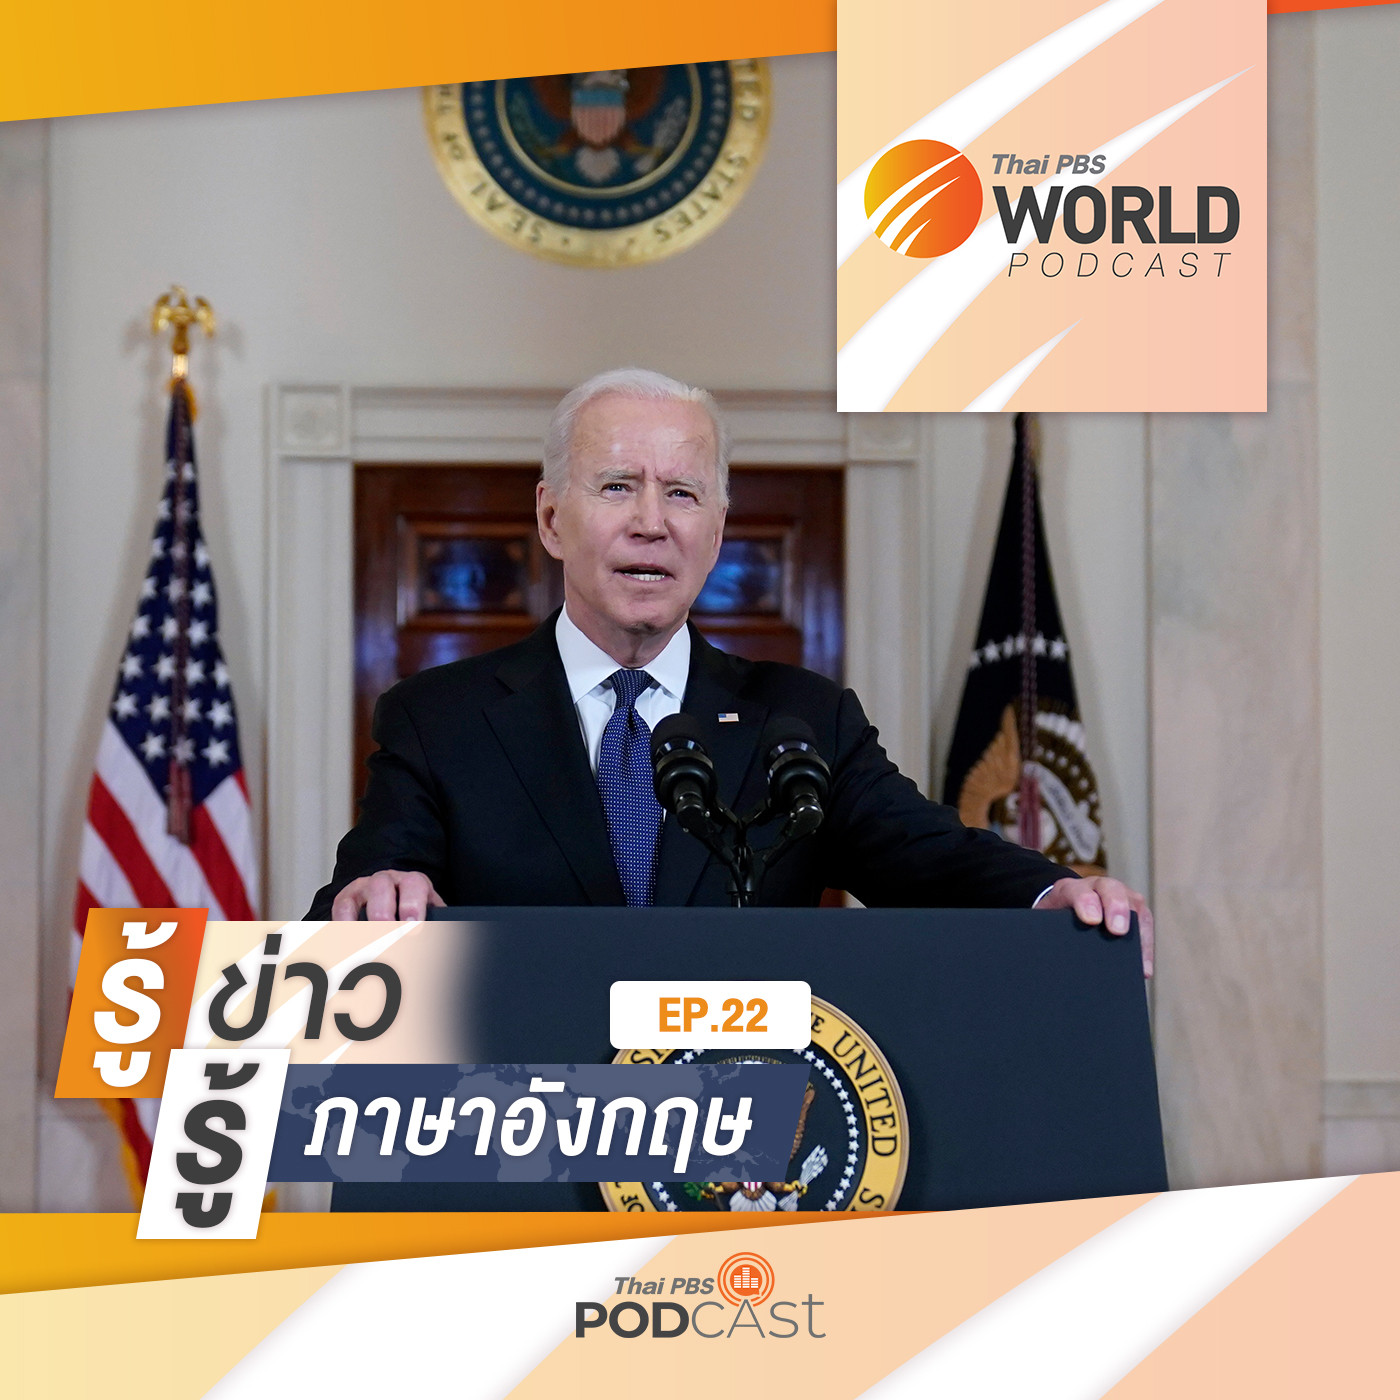 Thai PBS World Podcast - รู้ข่าว รู้ภาษาอังกฤษ EP. 22: รู้ข่าว รู้ภาษาอังกฤษ - "ไบเดน" สั่งรื้อการสอบสวนต้นตอโควิด-19 สะเทือนความขัดแย้งสหรัฐฯ - จีน